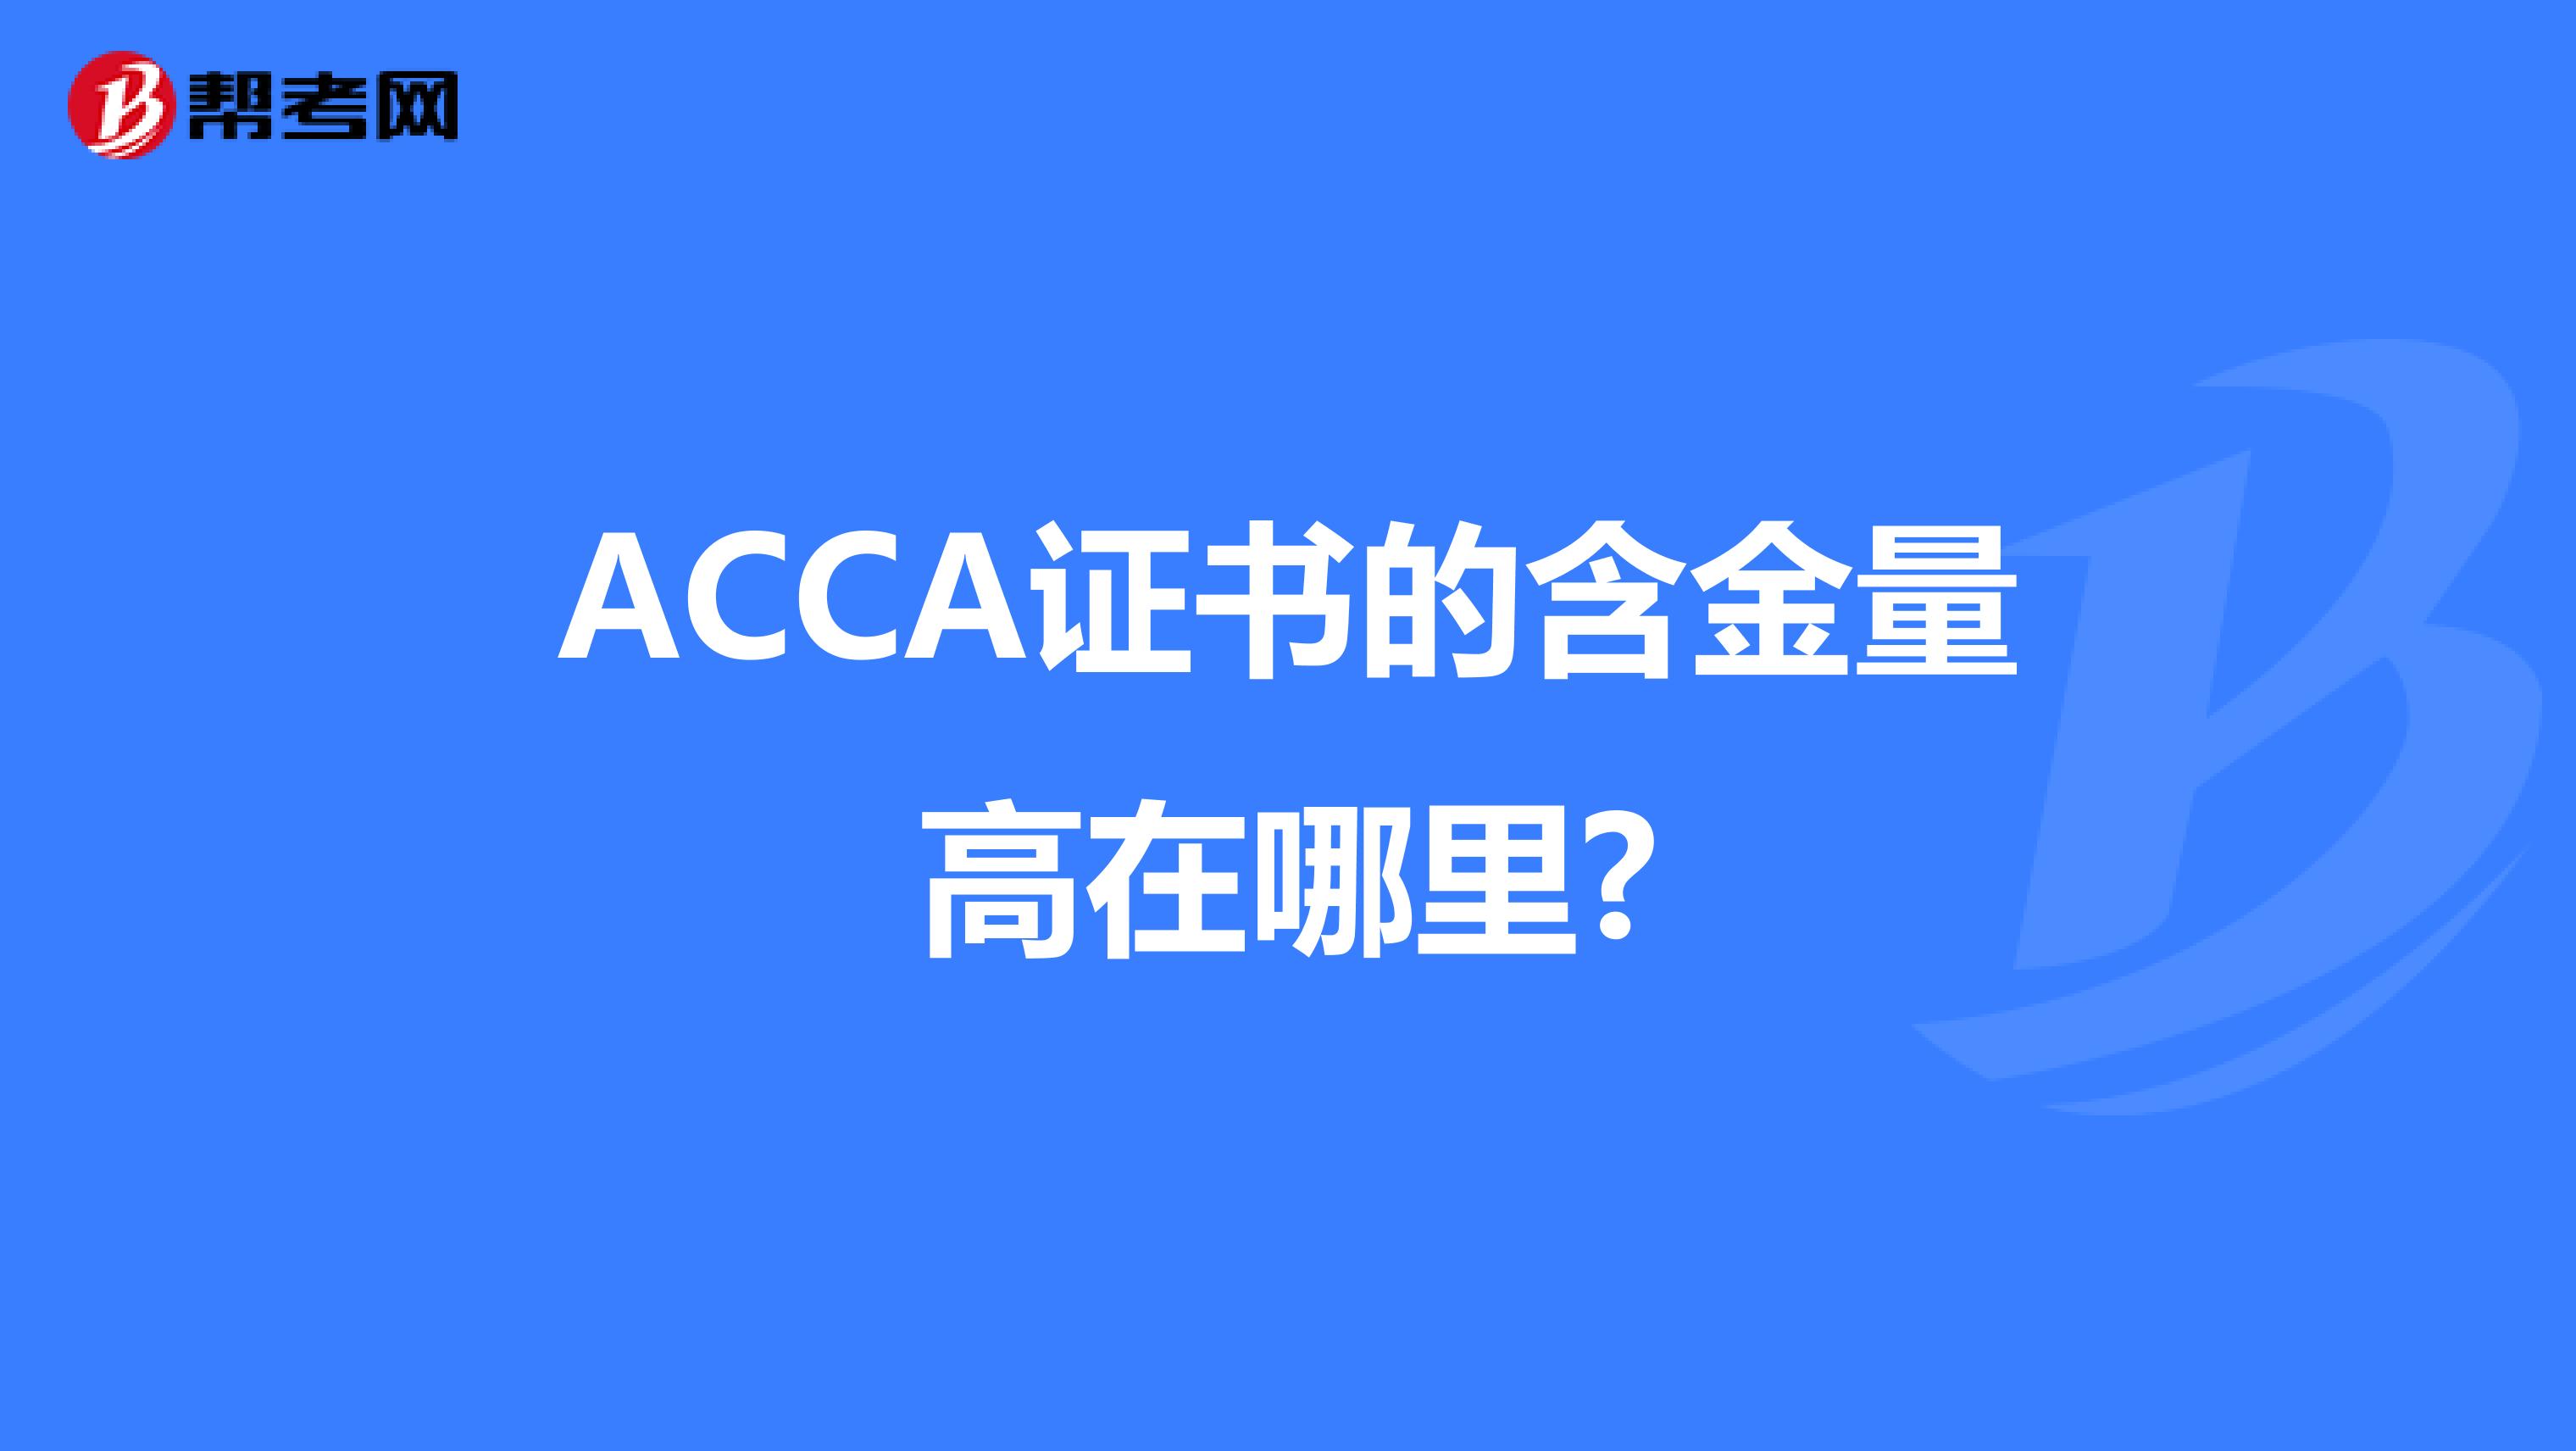 ACCA证书的含金量高在哪里?